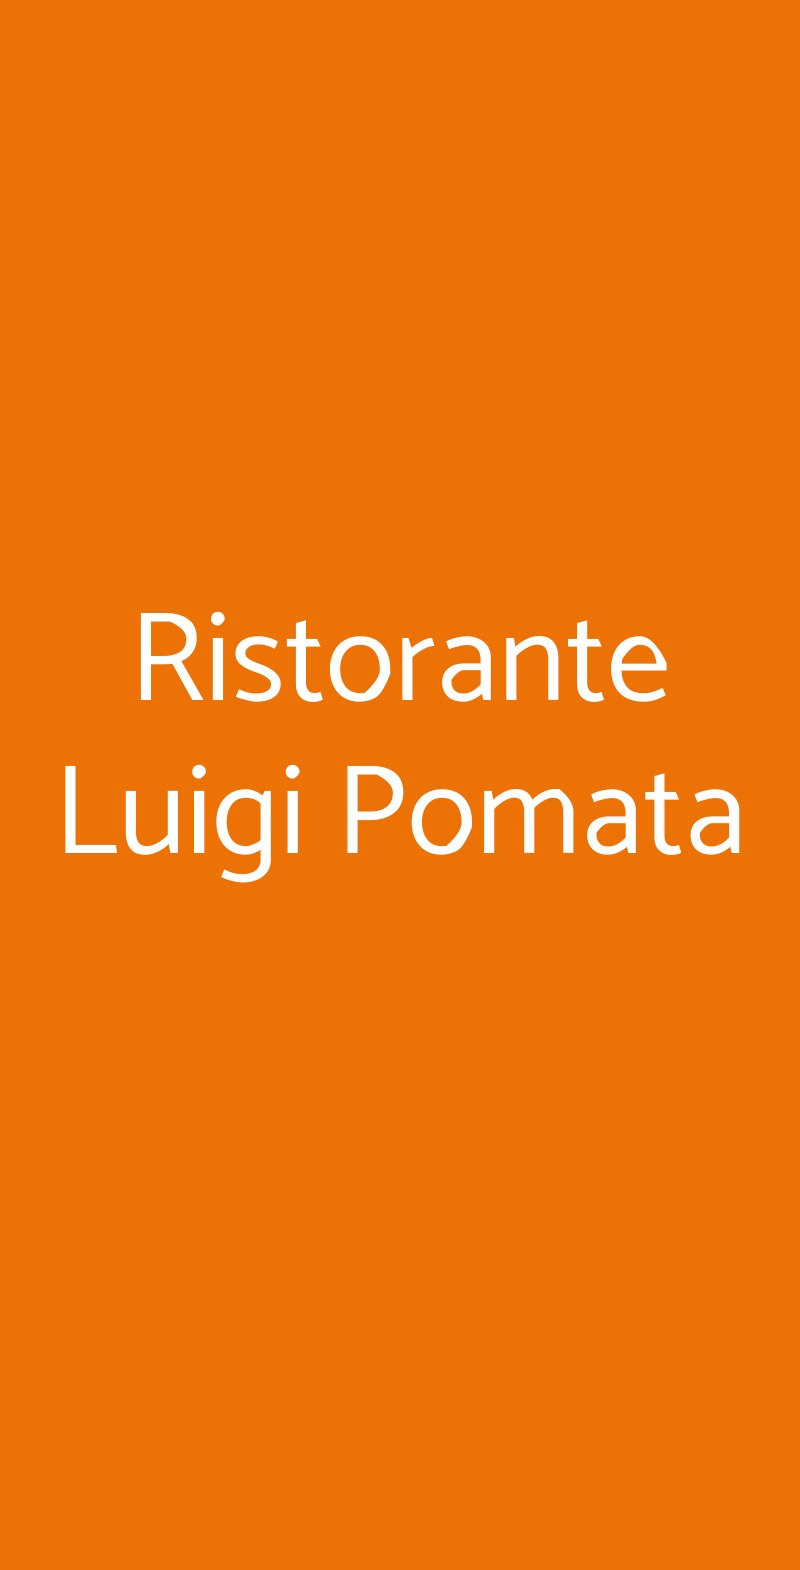 Ristorante Luigi Pomata Cagliari menù 1 pagina